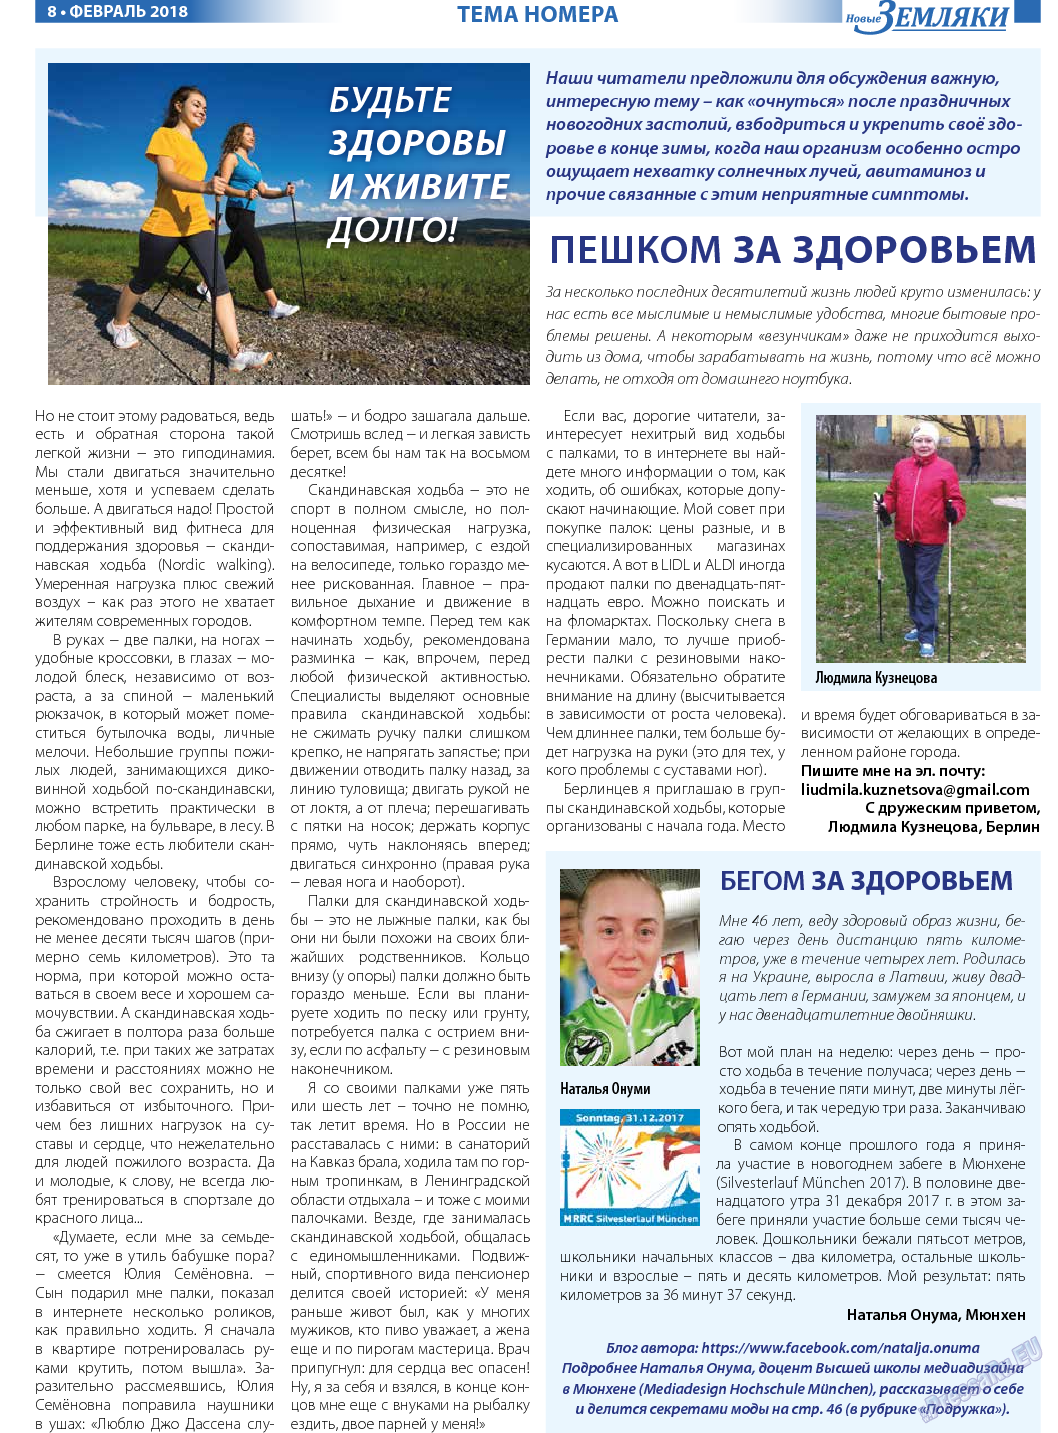 Новые Земляки (газета). 2018 год, номер 2, стр. 8